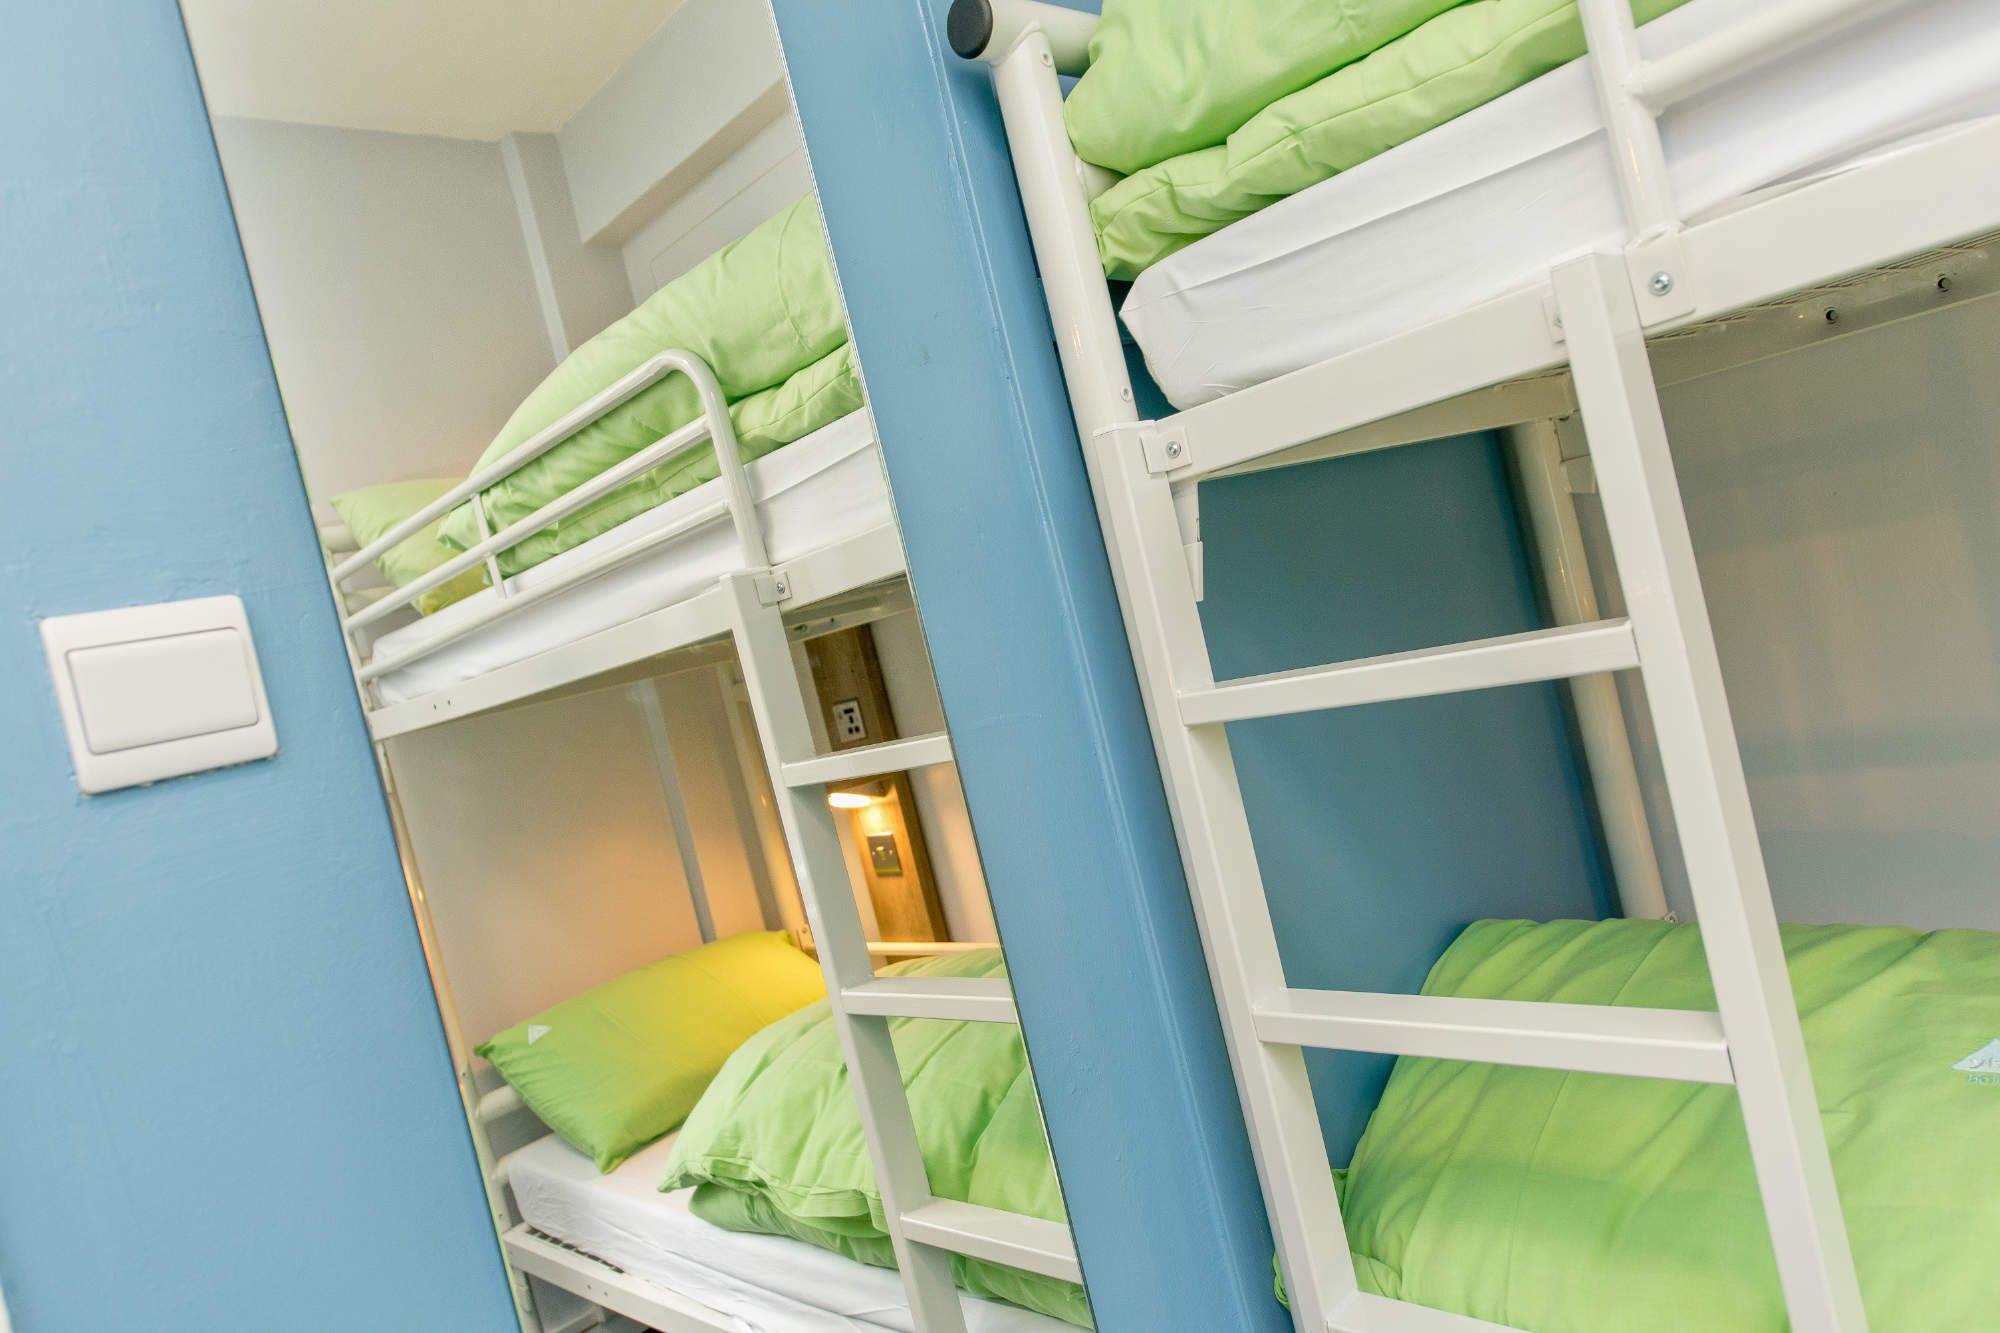 A set of bunk beds